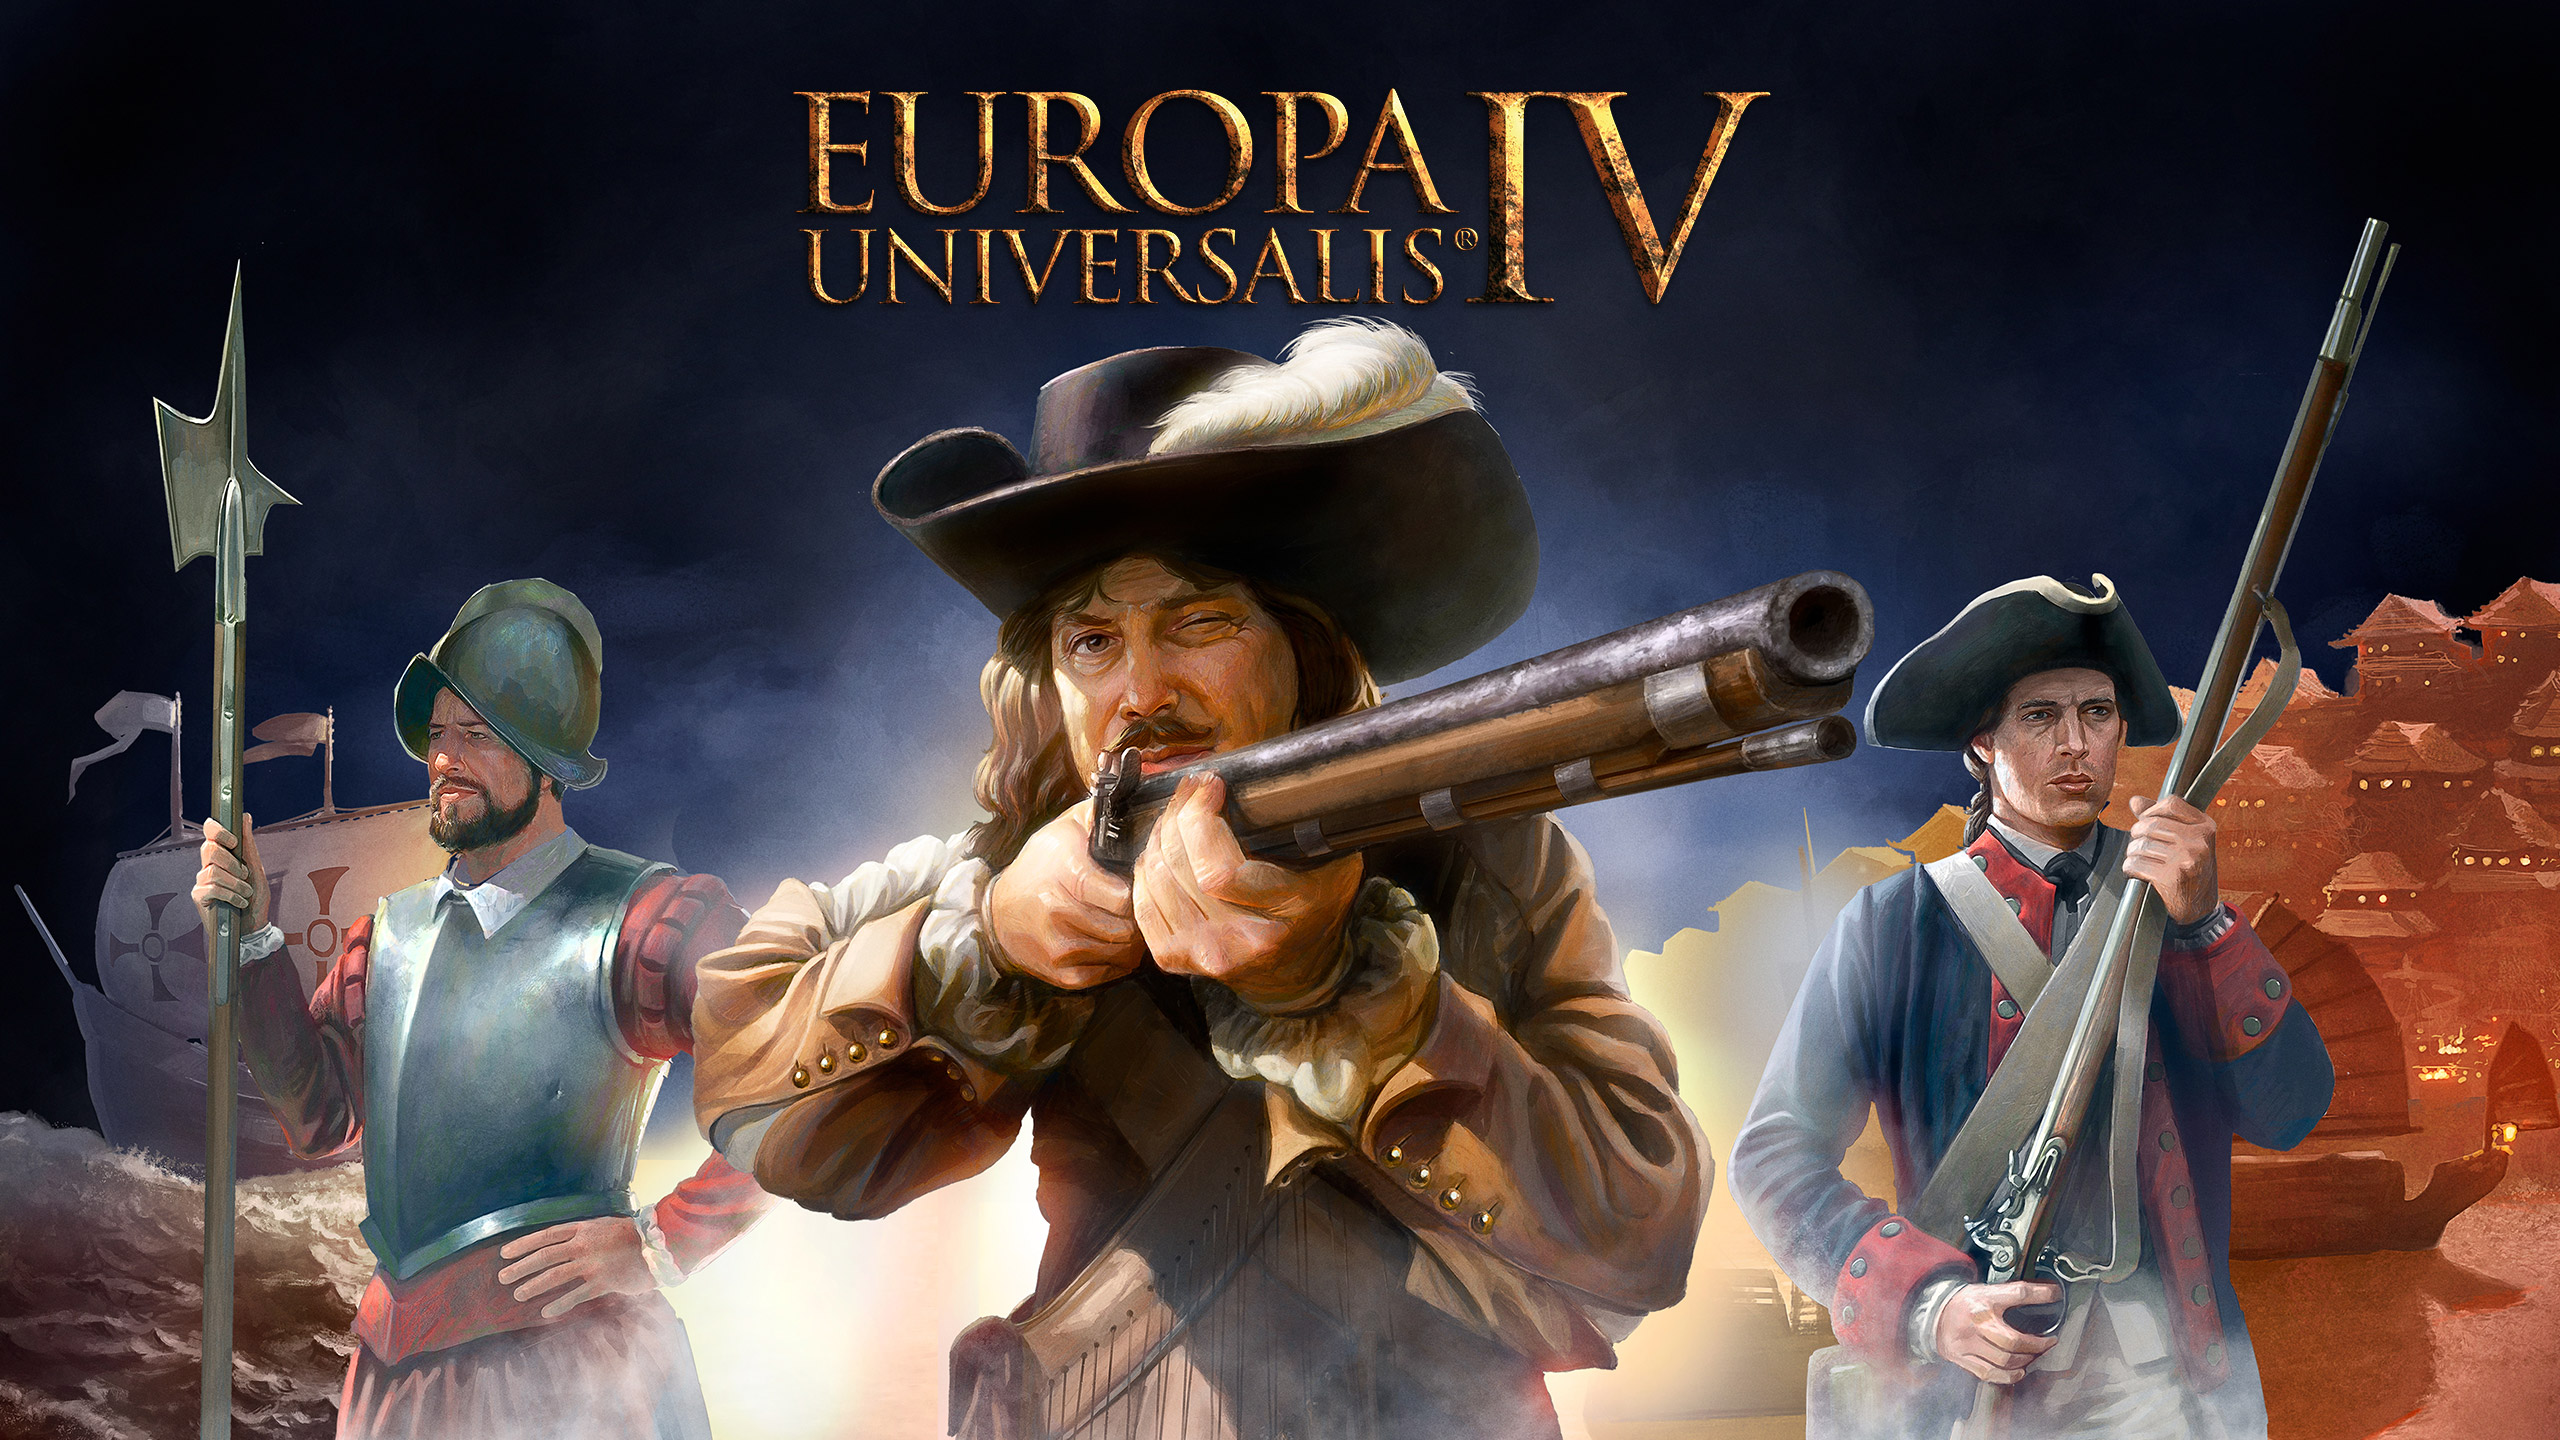 Europa Universalis IV Bedava olarak Oyuncularla Buluşuyor!